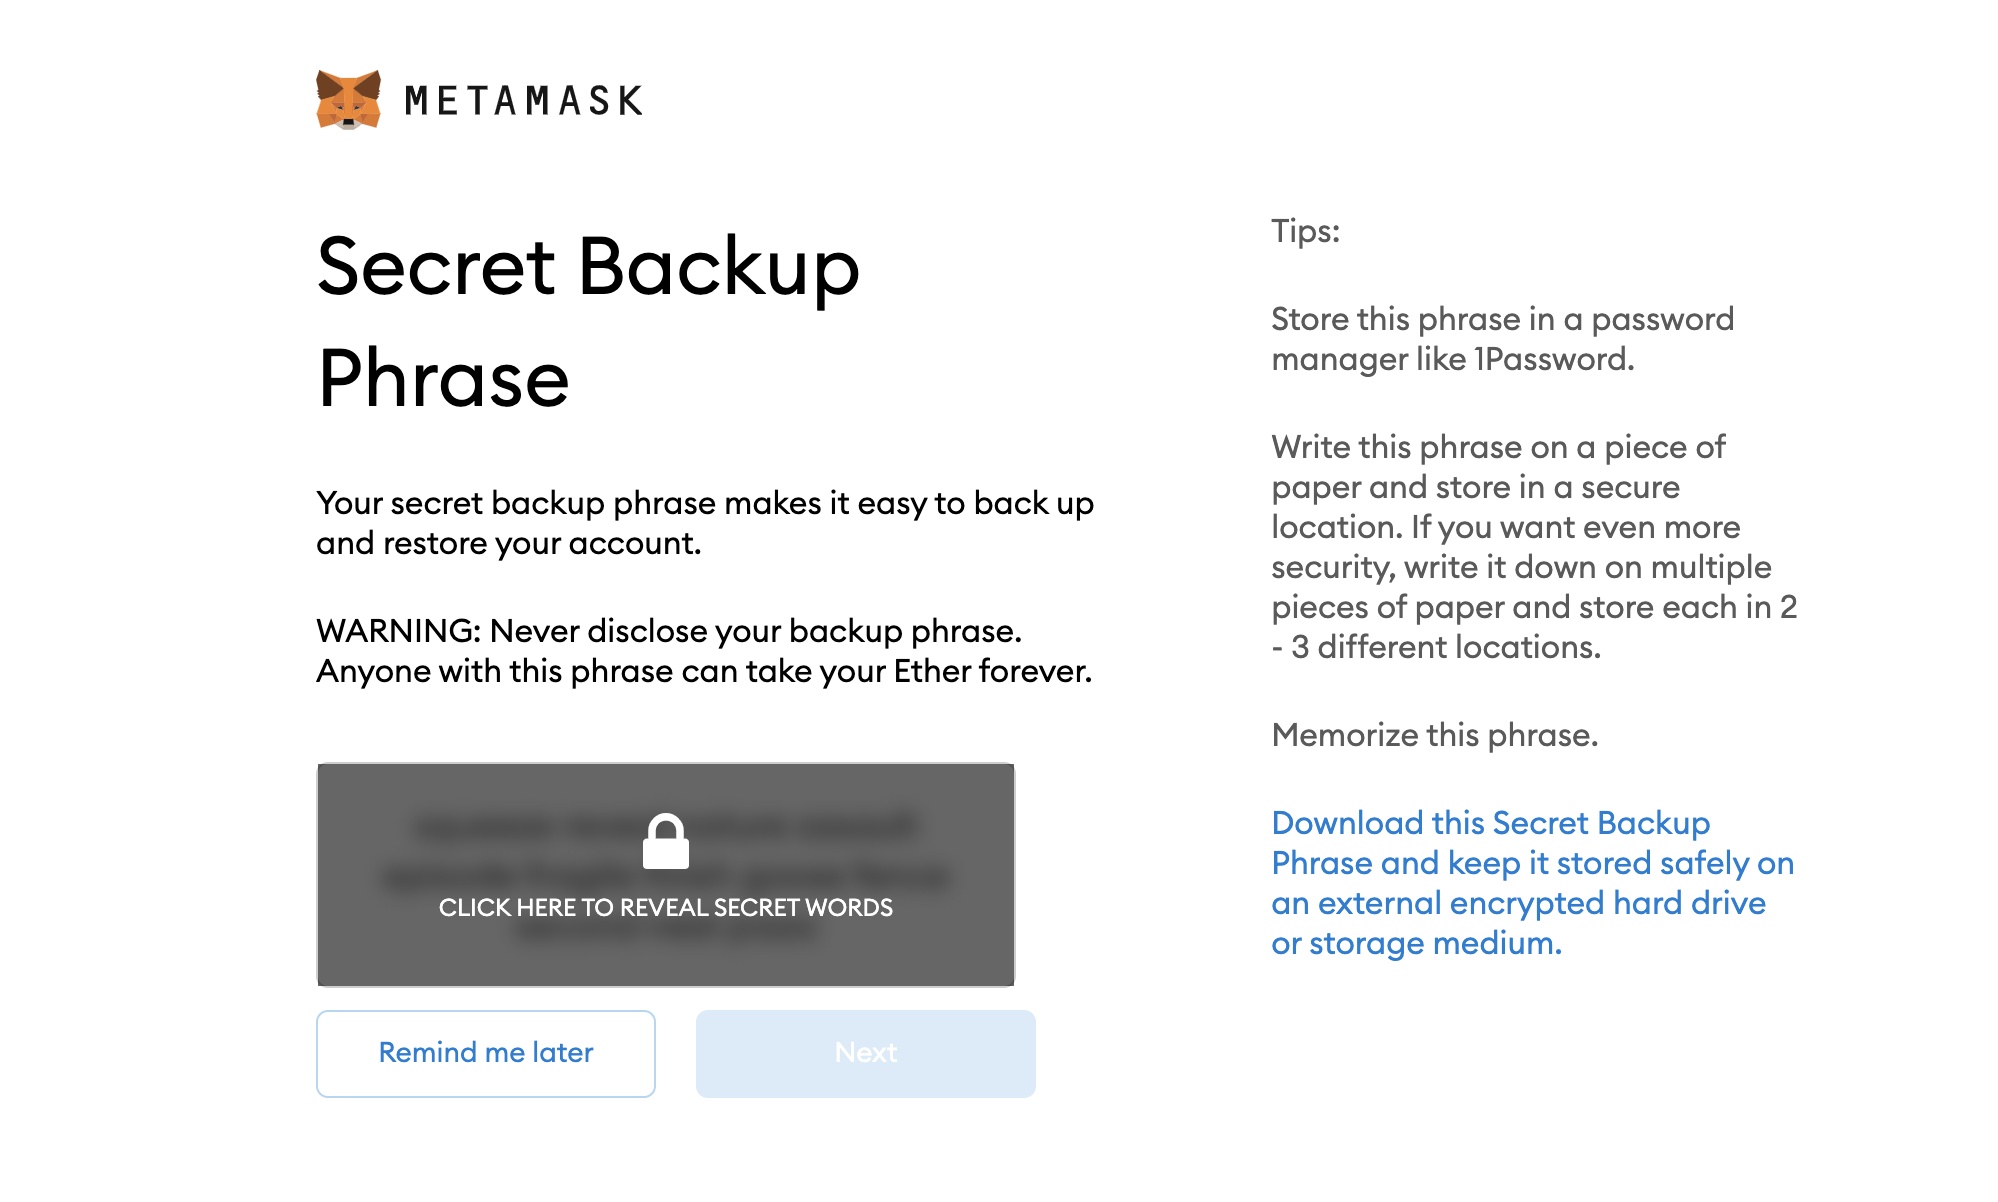 Secret backup phase in Metamask